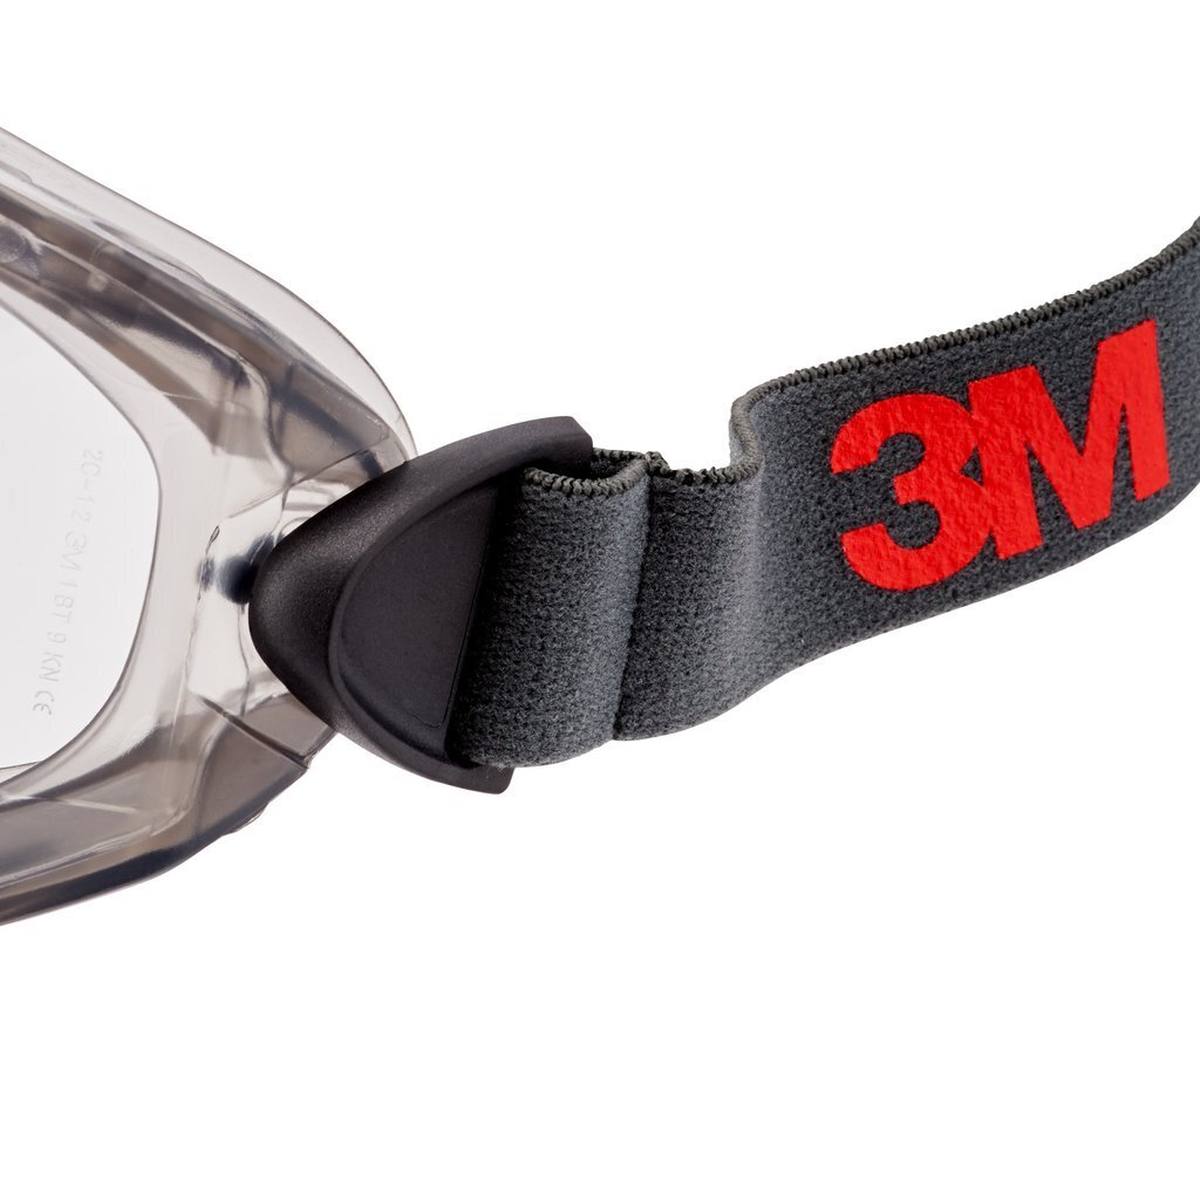 3M 2891-SGAF Full-vision goggles, with ventilation slit, adjustable hinges, anti-fog coating